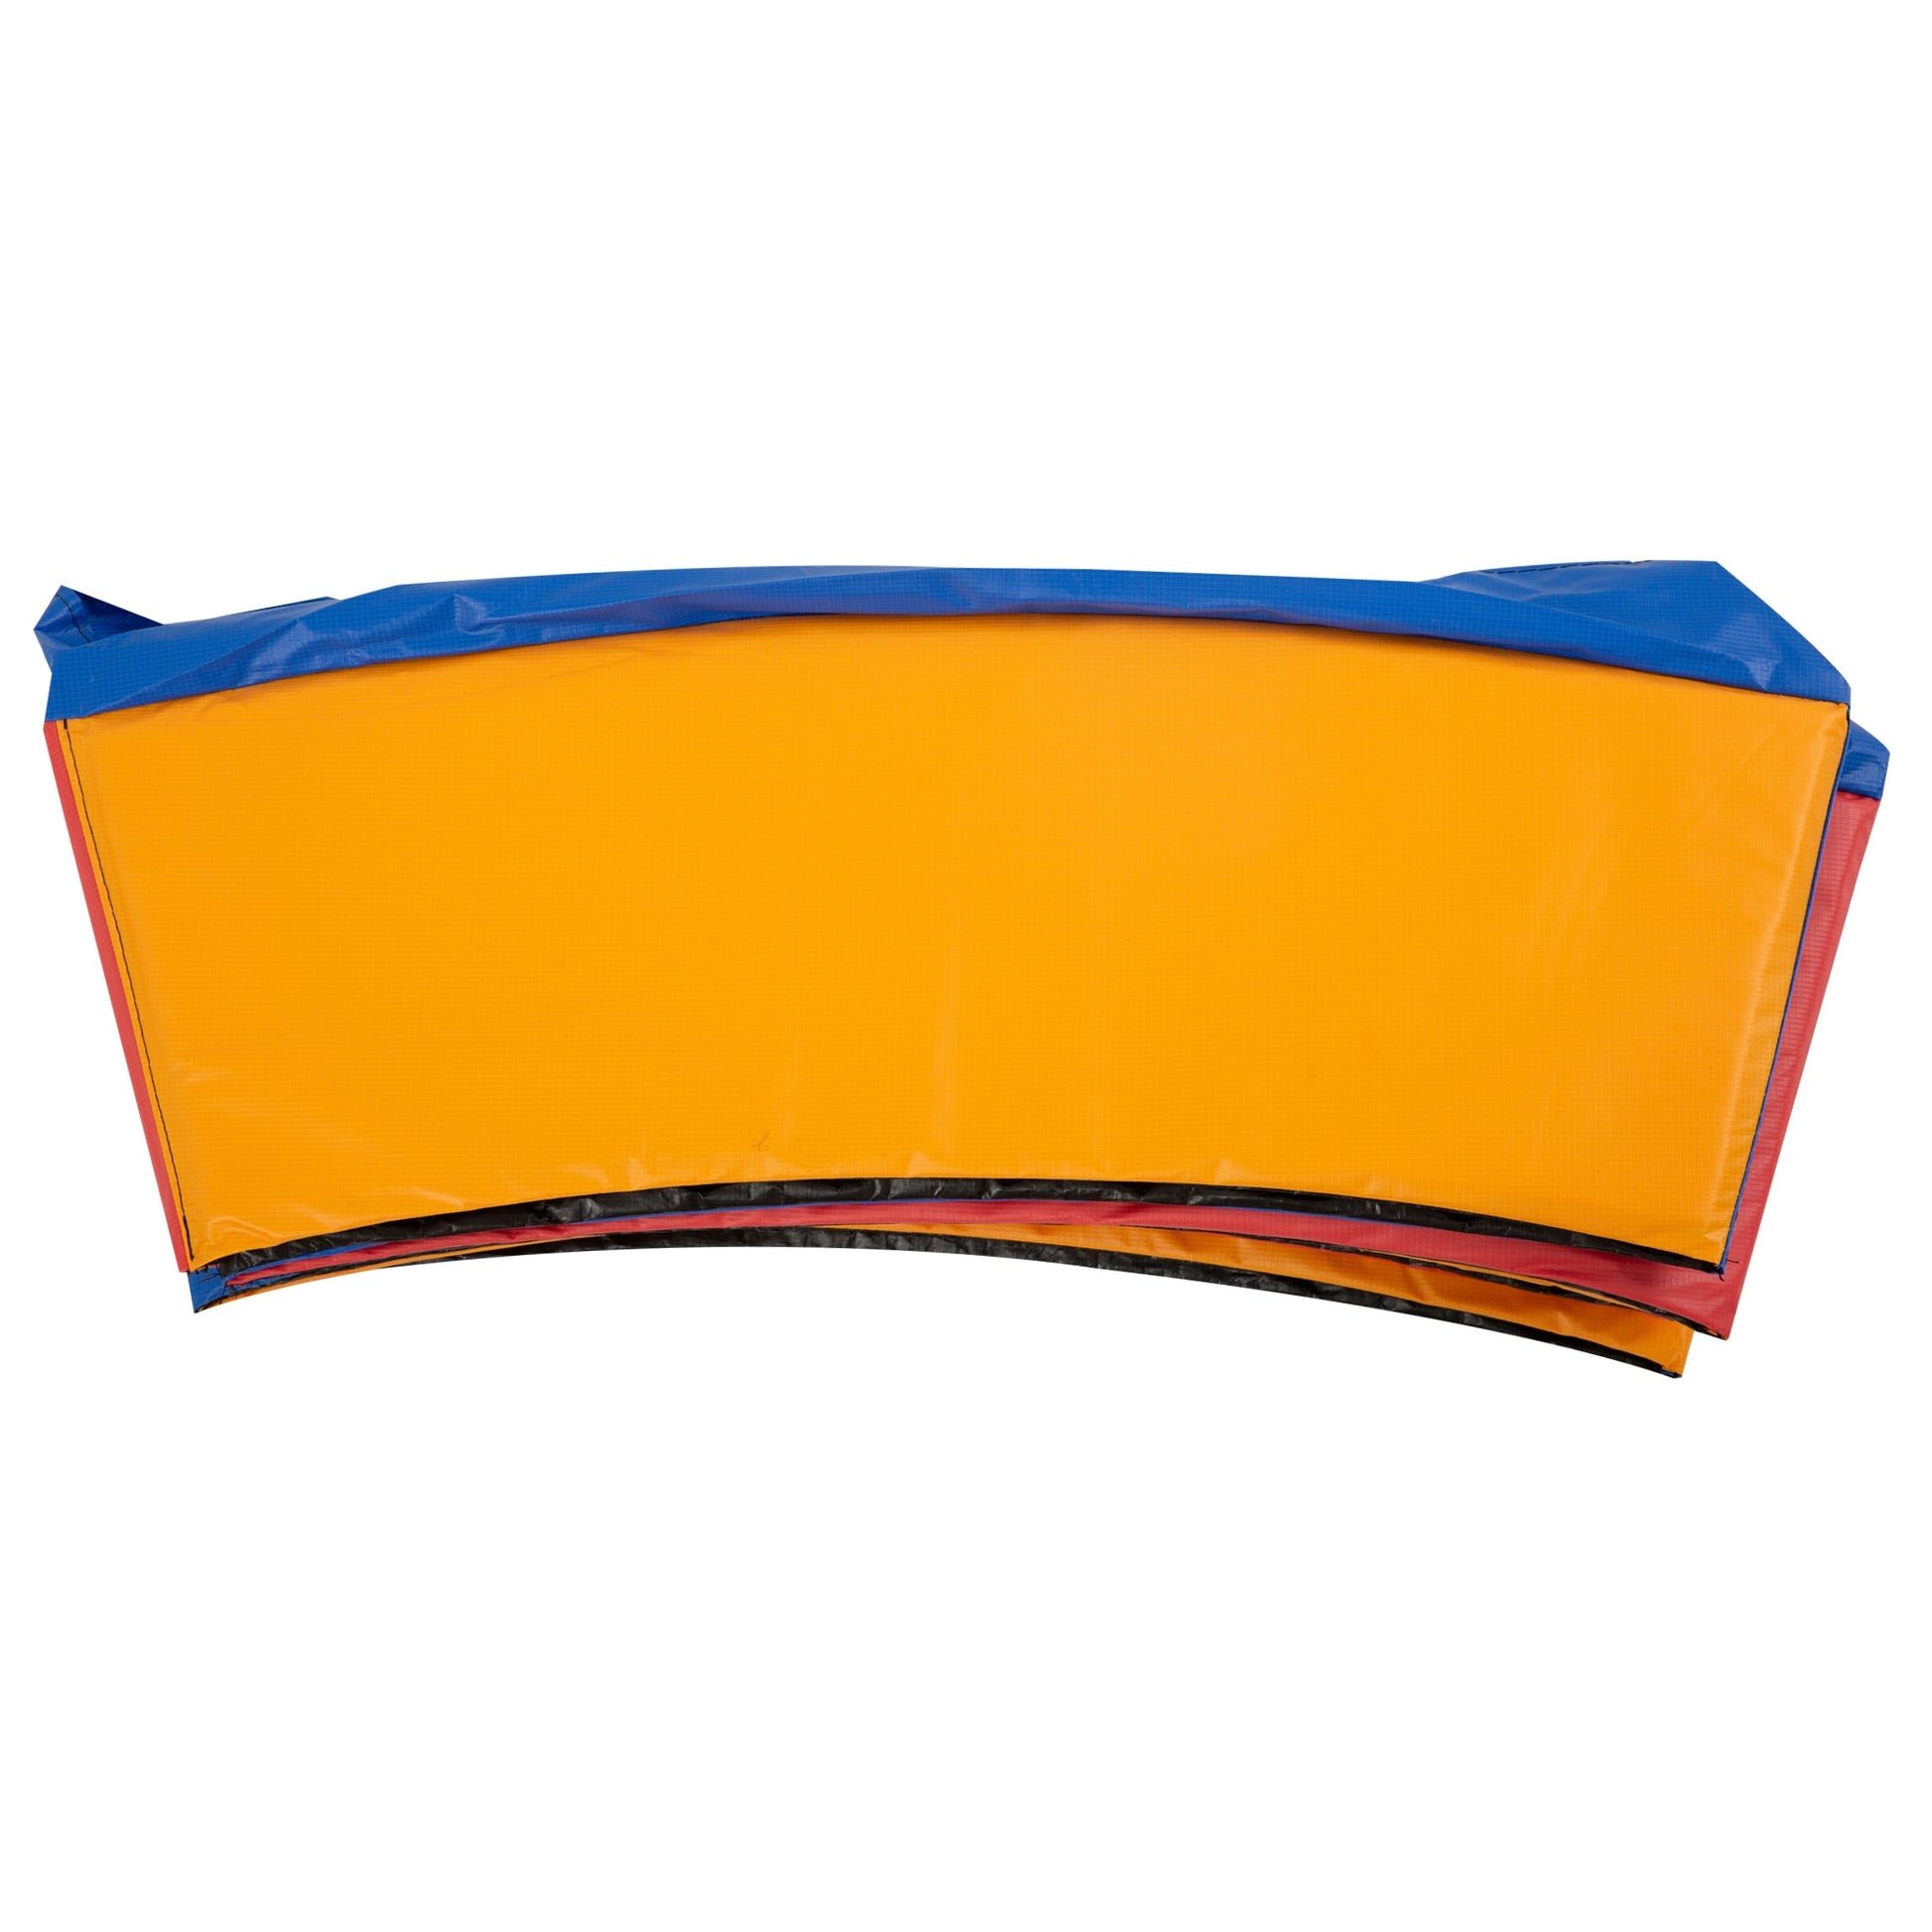 Φ12ft Trampoline Pad Φ144" Spring Safety Replacement Gym Bounce Jump Cover EPE Foam (Colorful) at Gallery Canada